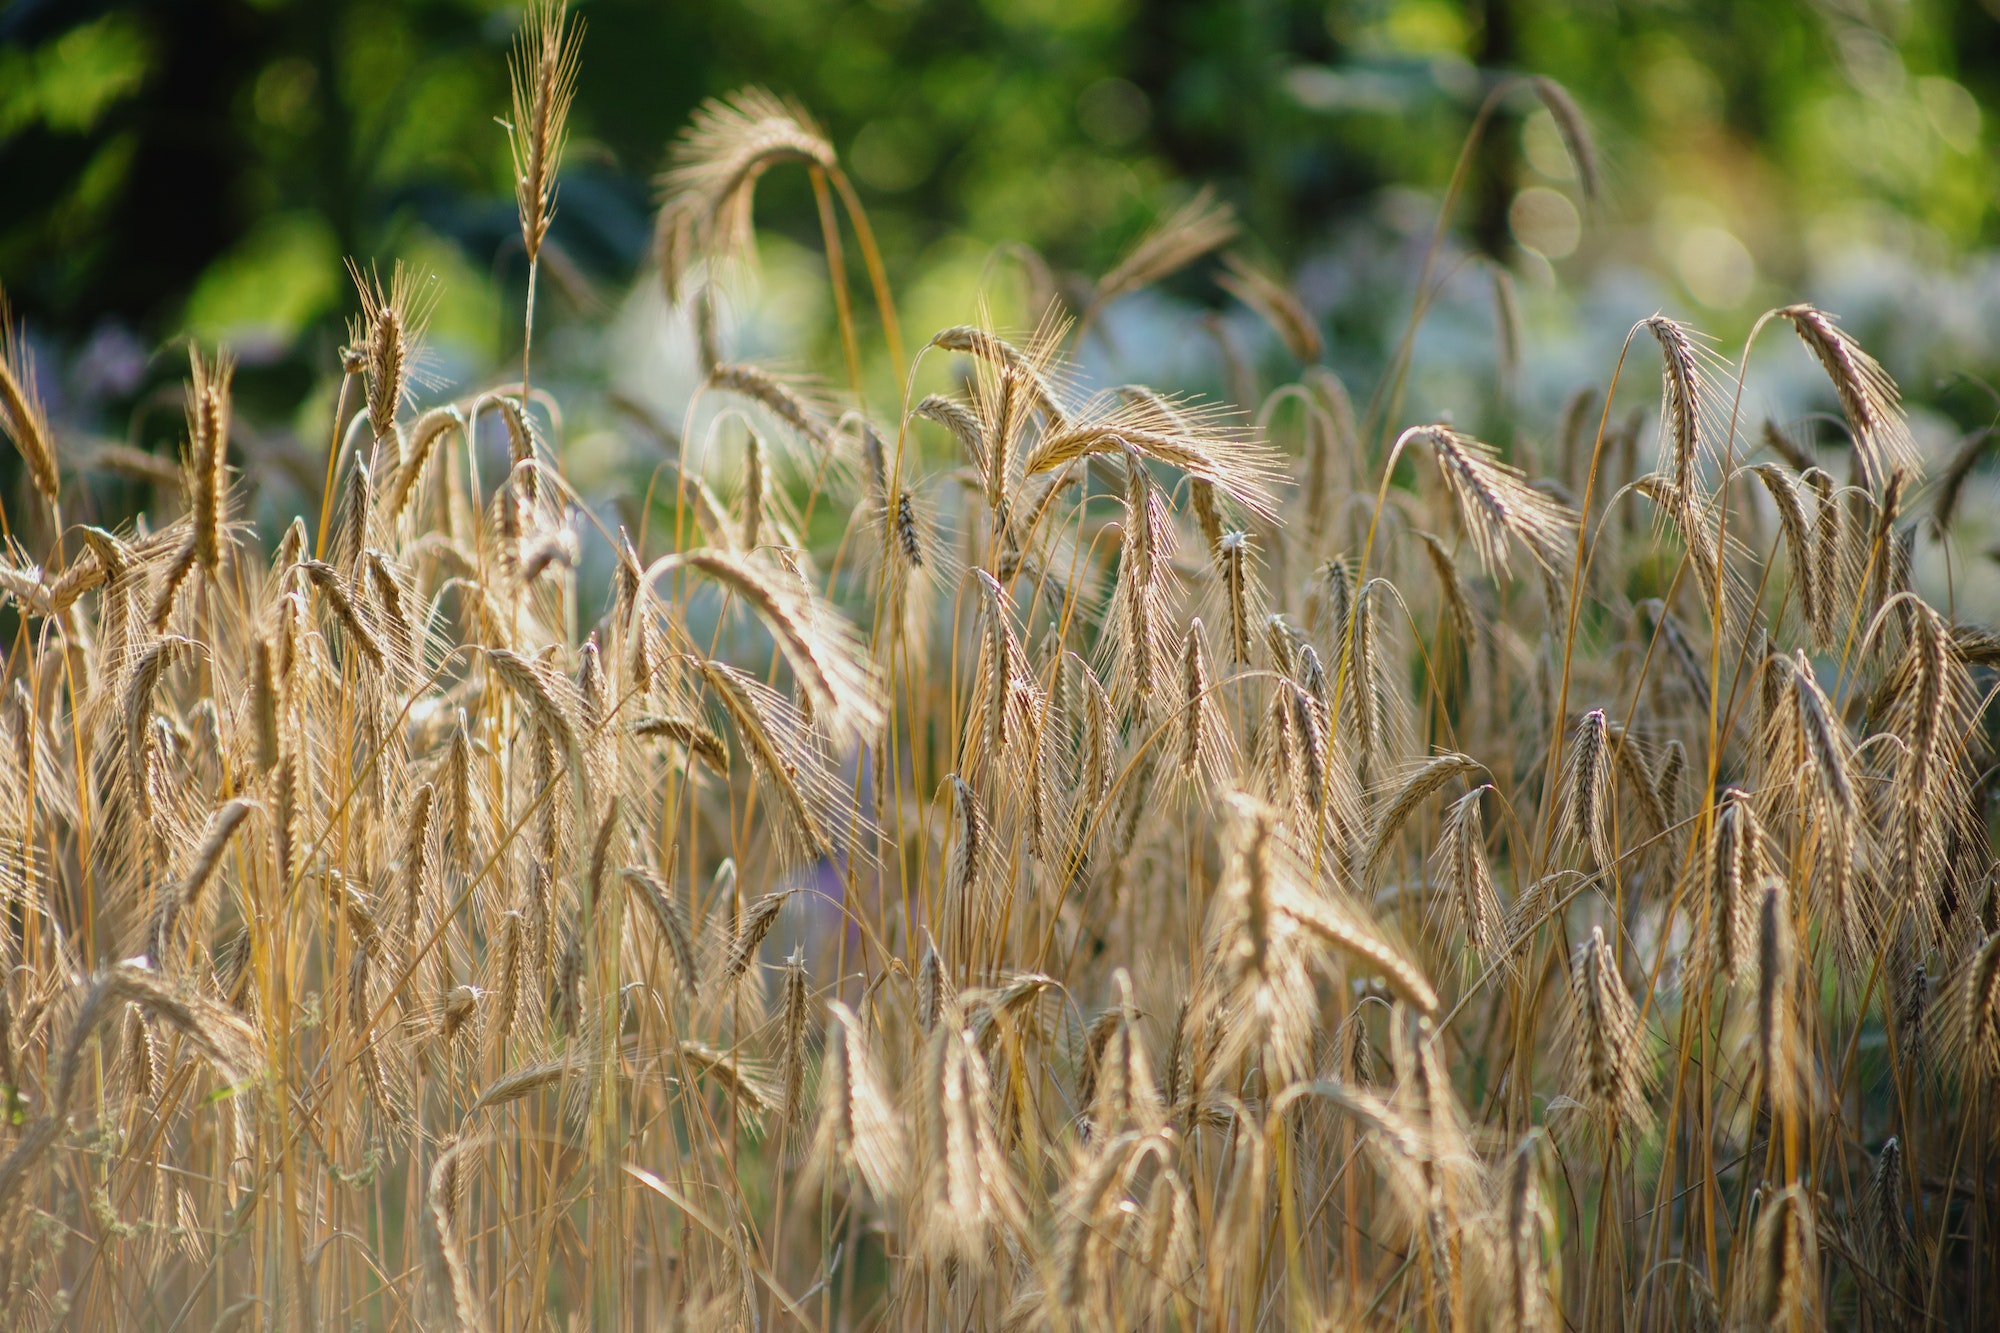 Las espigas de trigo crecen en el campo del agricultor, cultivadas para la producción de harina y alimentos.